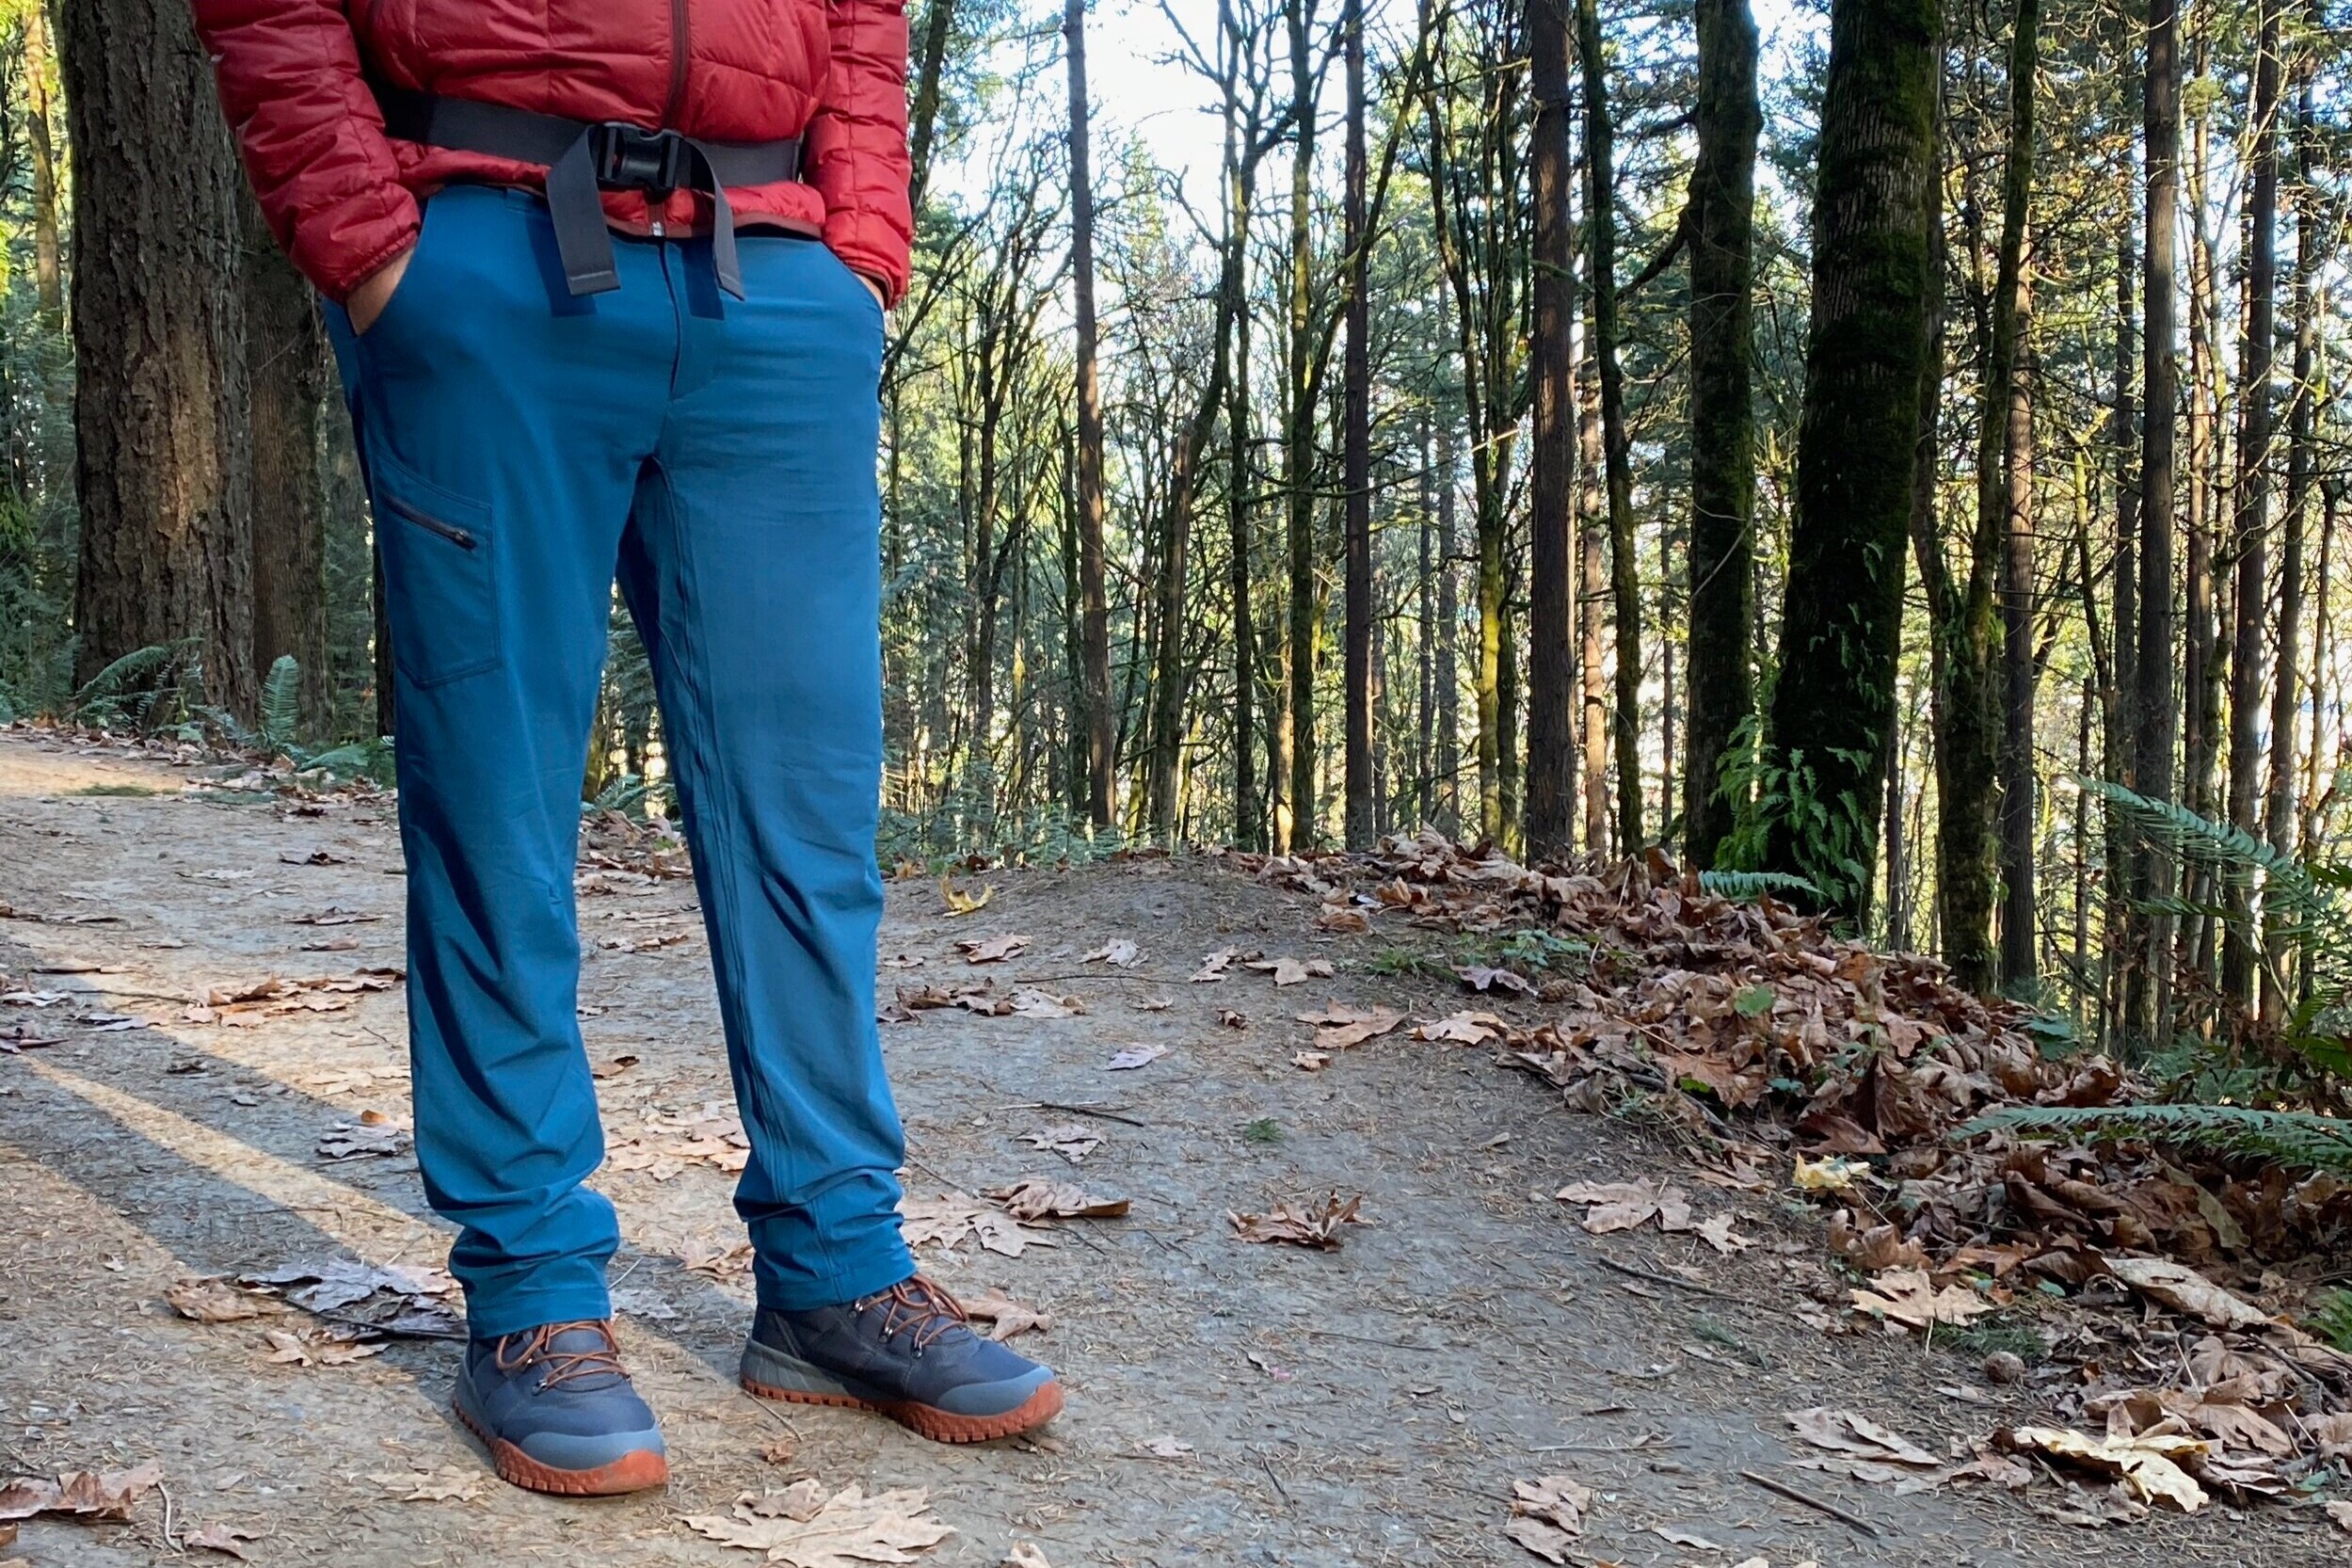 NOUKOW Men's Outdoor Hiking Pants Quick Dry Lightweight Waterproof Work Pants for Men Stretch 6 Zip Pockets and Belt 